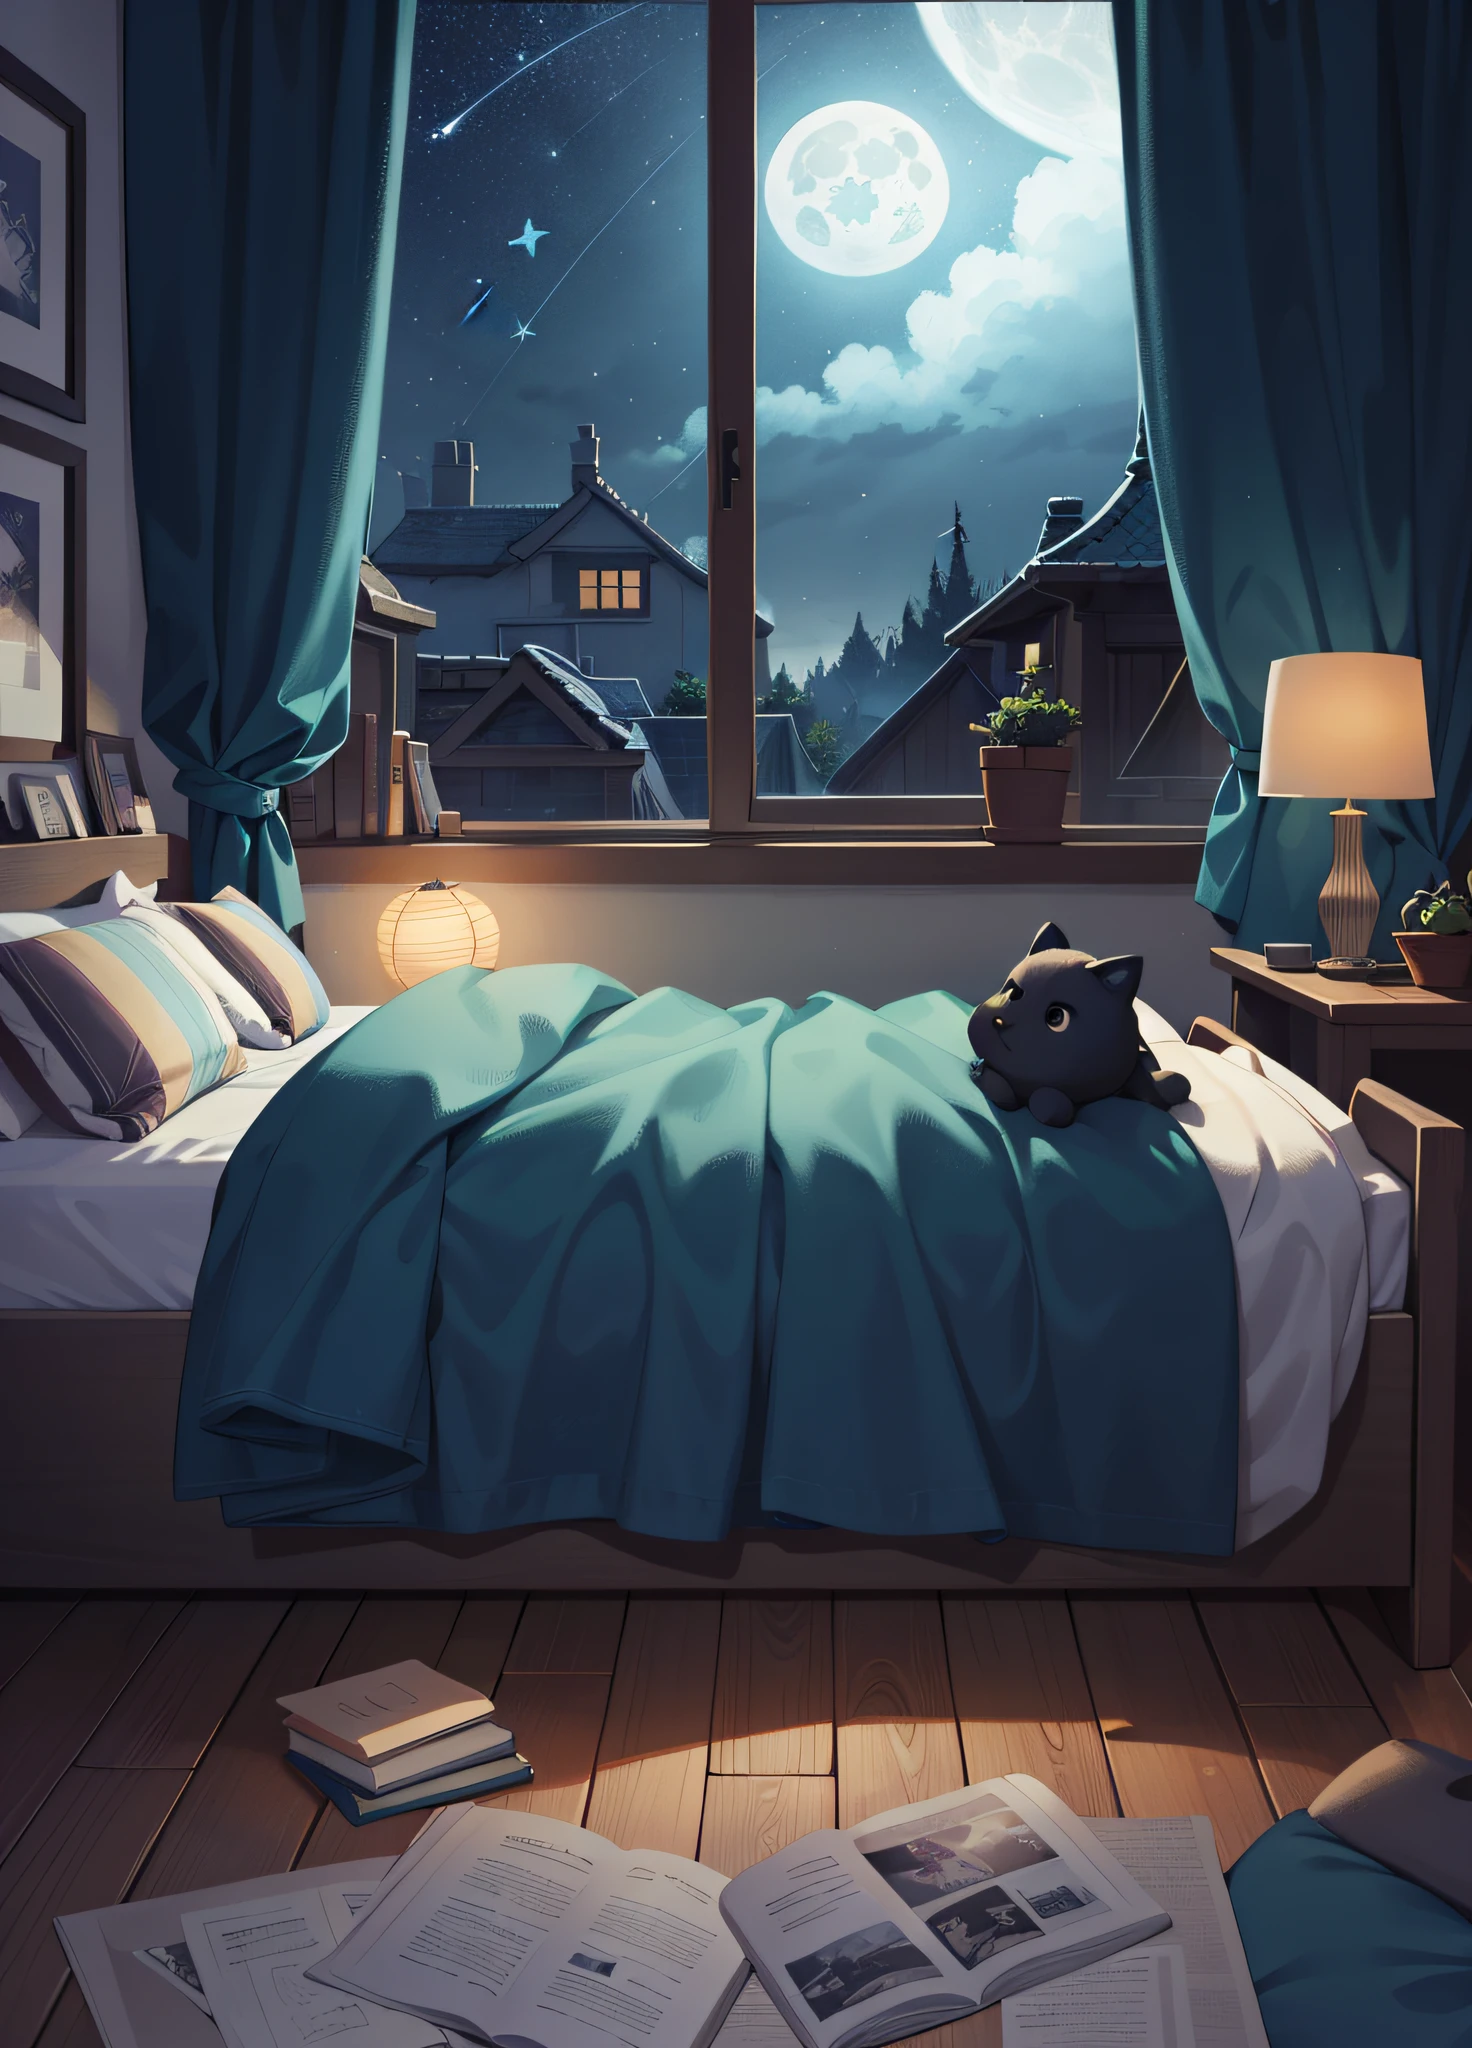 A bedroom window with ciel de nuit, Illustration de la pleine lune et des étoiles dans le ciel (illustration 8k), (meilleure qualité) (Détails complexes) (8k) (ciel de nuit)